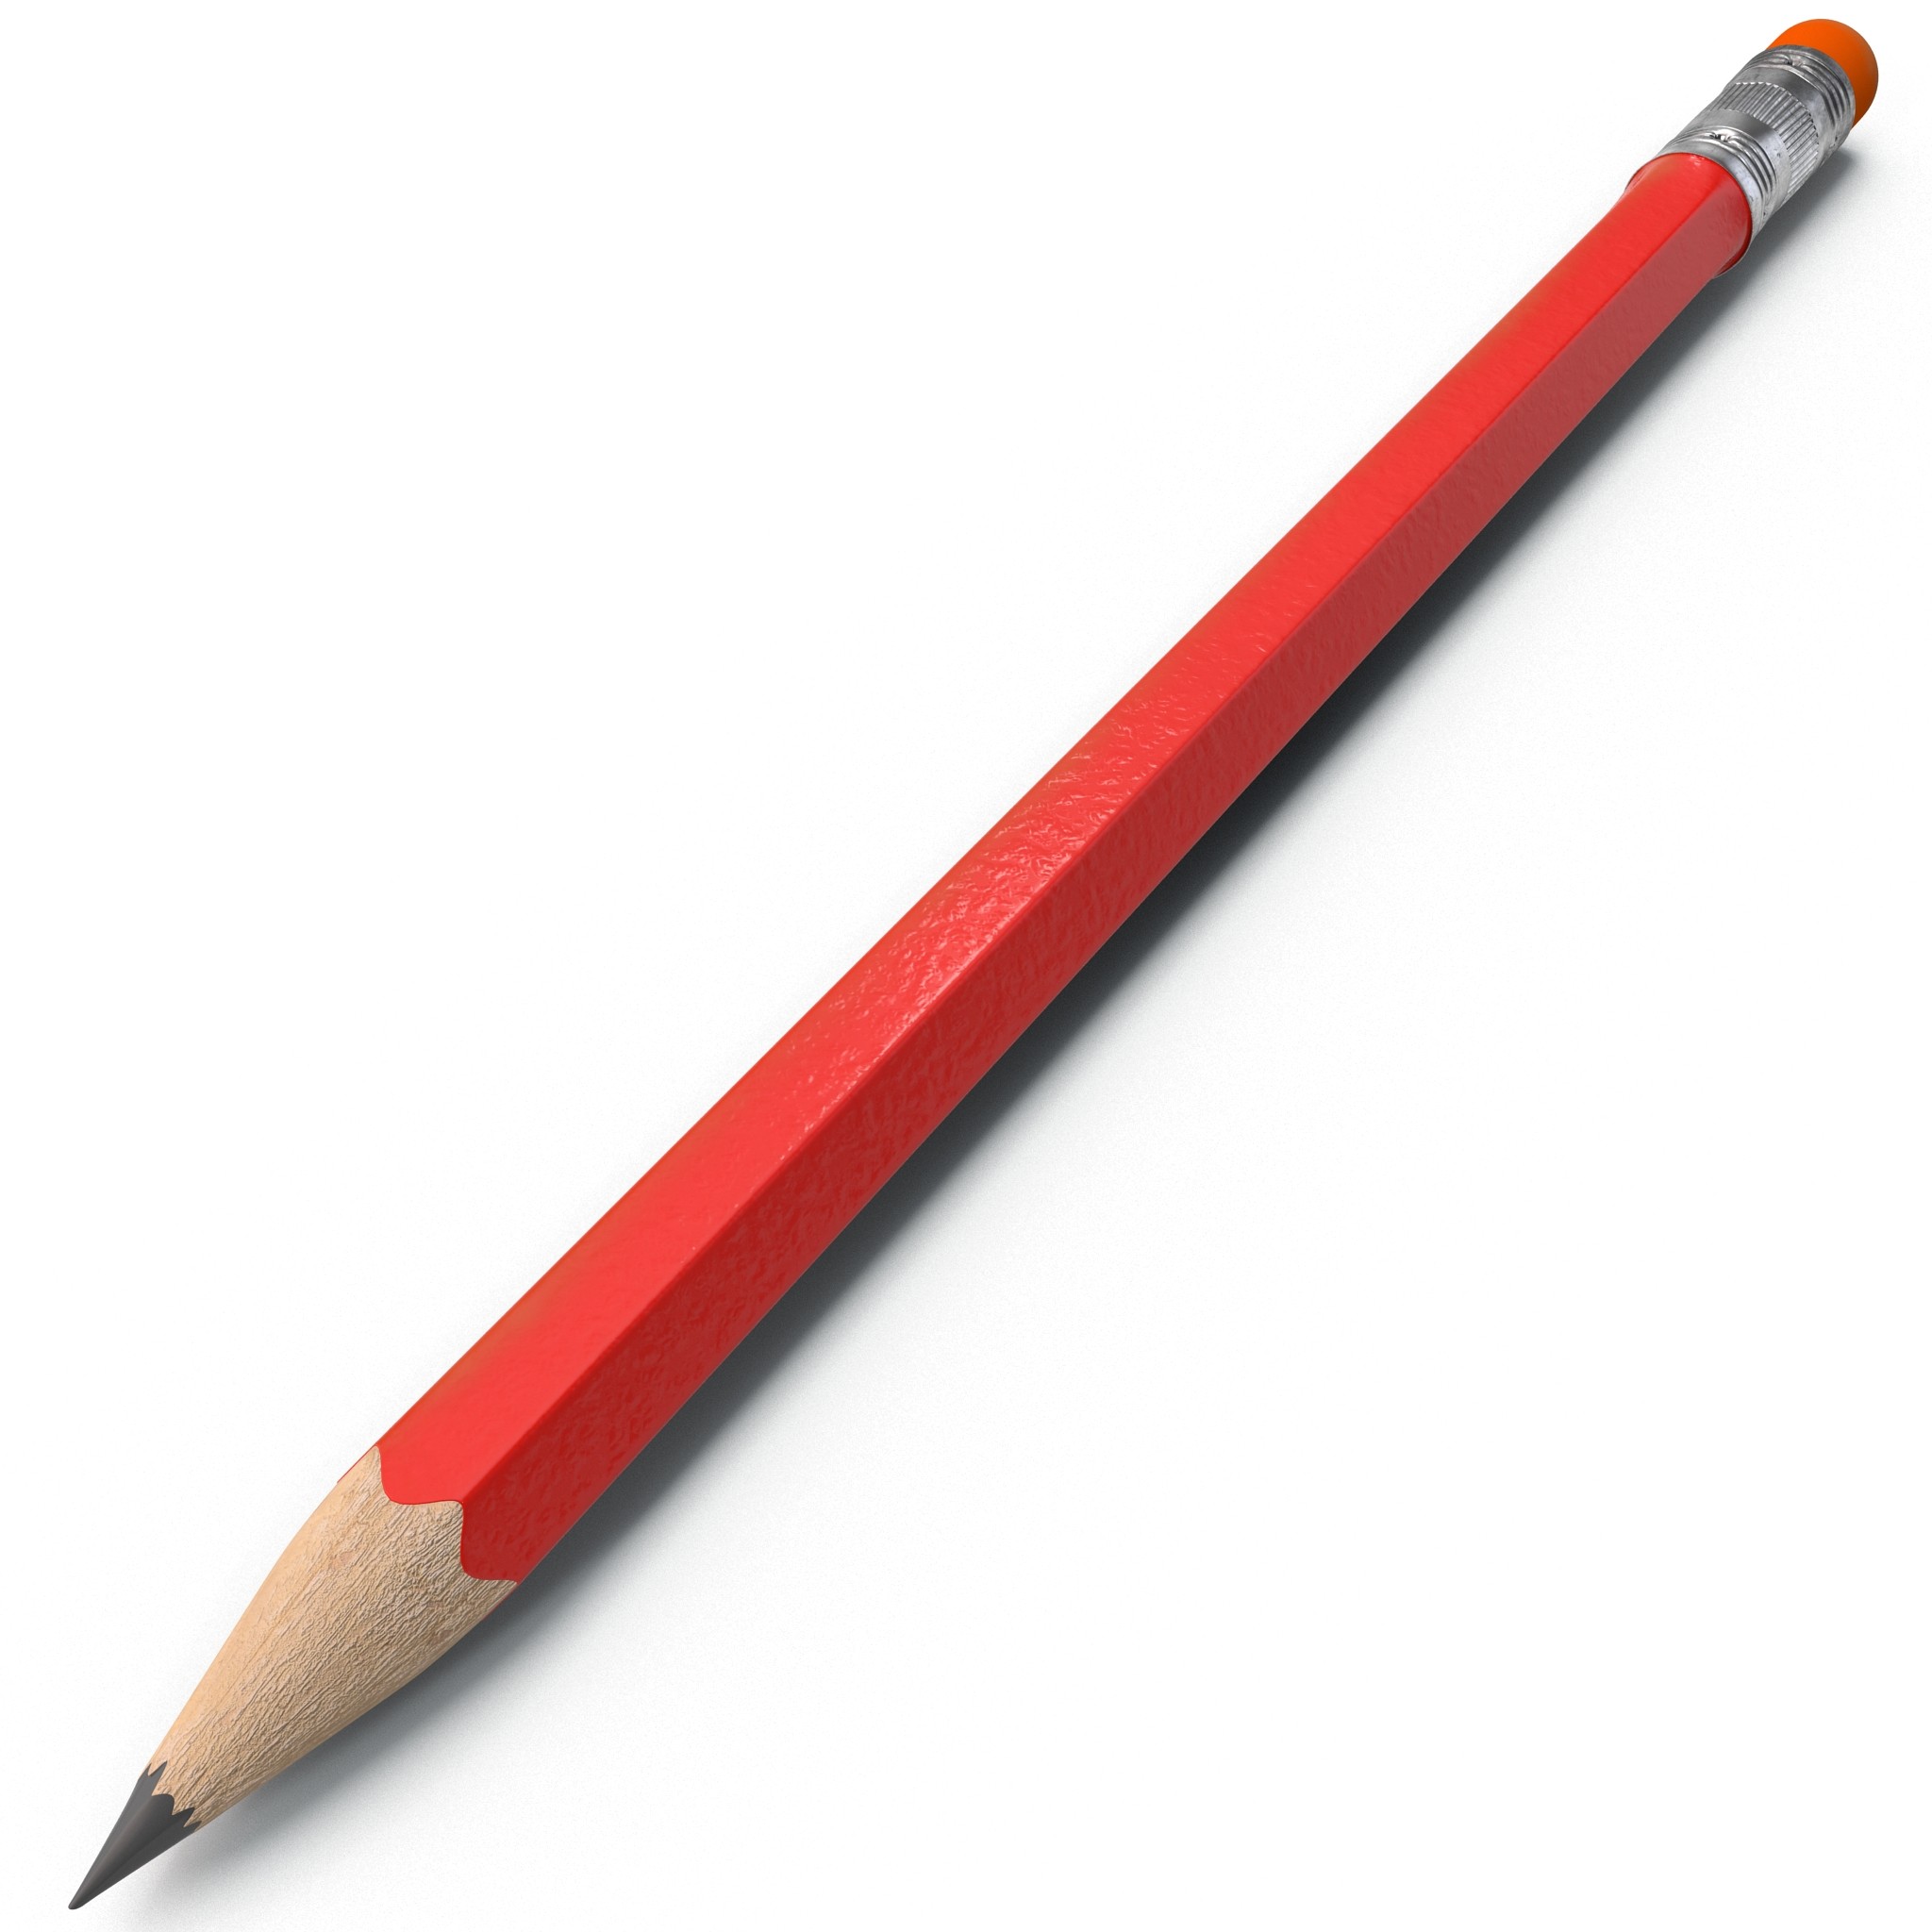 Pencil download. Карандаш. Карандаш на белом фоне. Один карандаш. Простой карандаш на белом фоне.